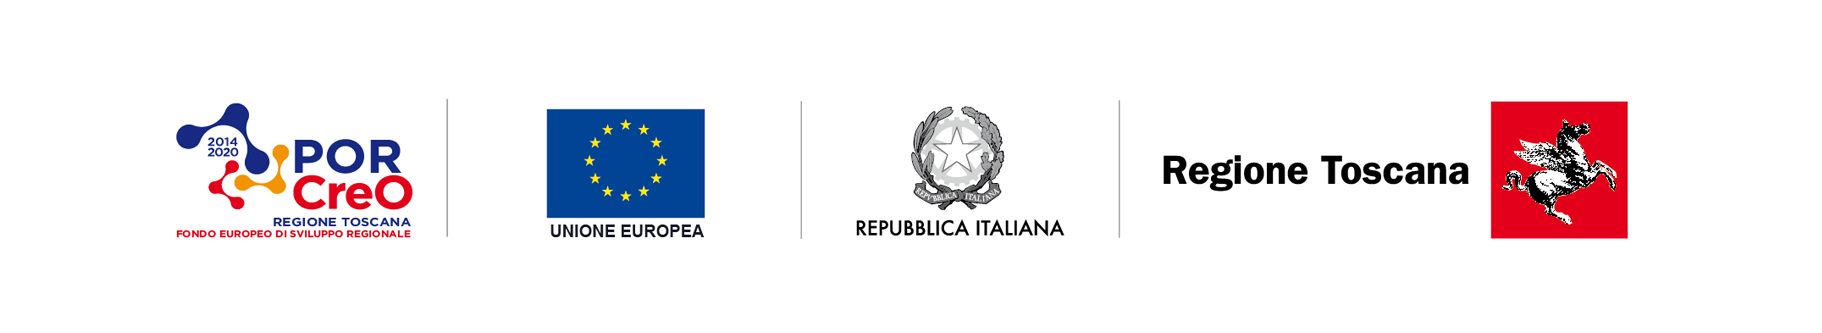 EFESTO: POR FESR Toscana 2014-2020